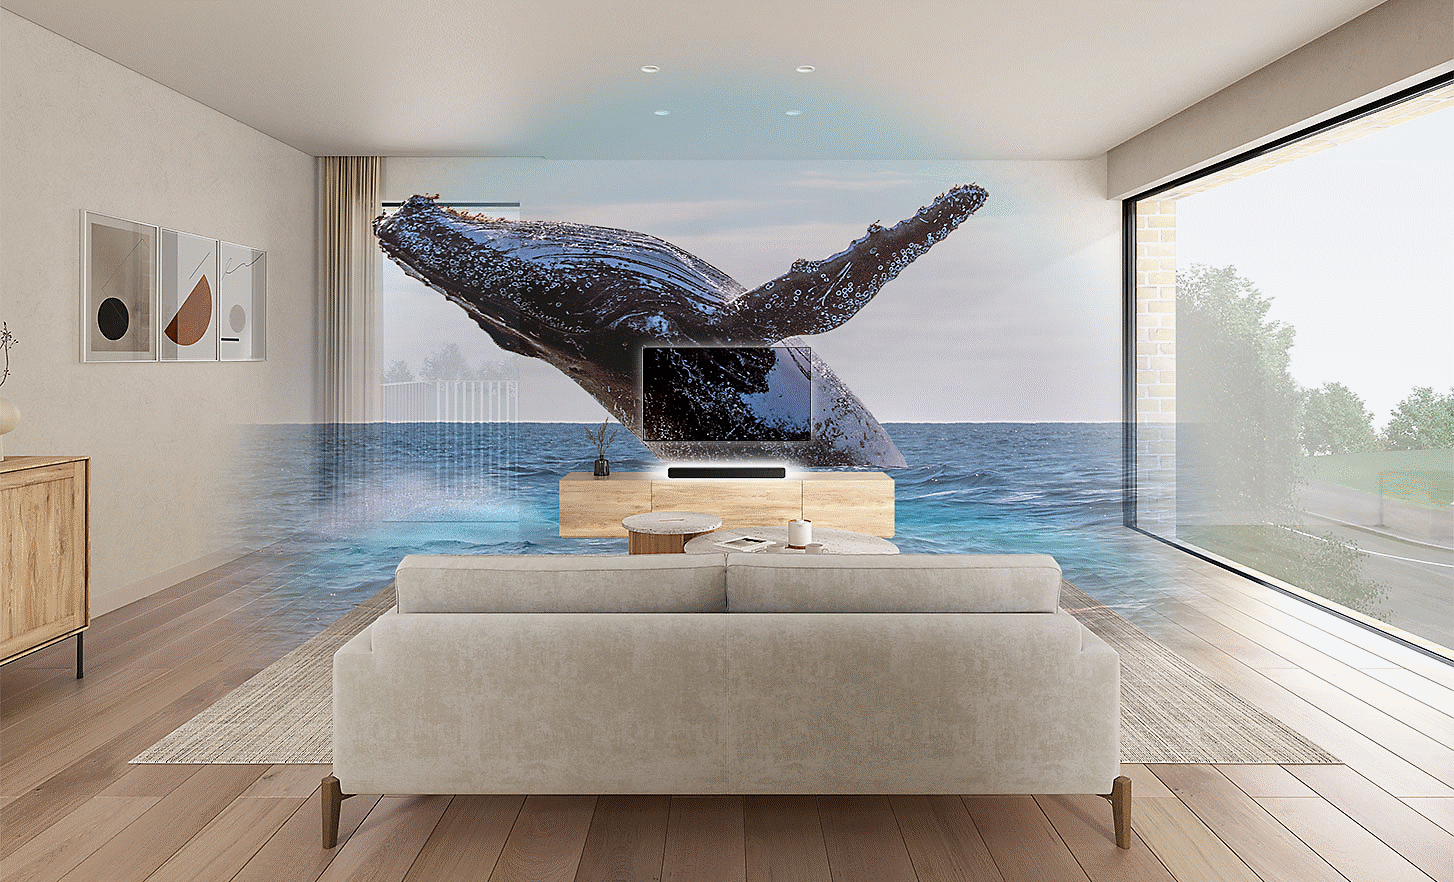 Snímek obývacího pokoje s televizorem a soundbarem HT-S2000 uprostřed, nad nimiž je umístěn obraz velryby s vodoznakem